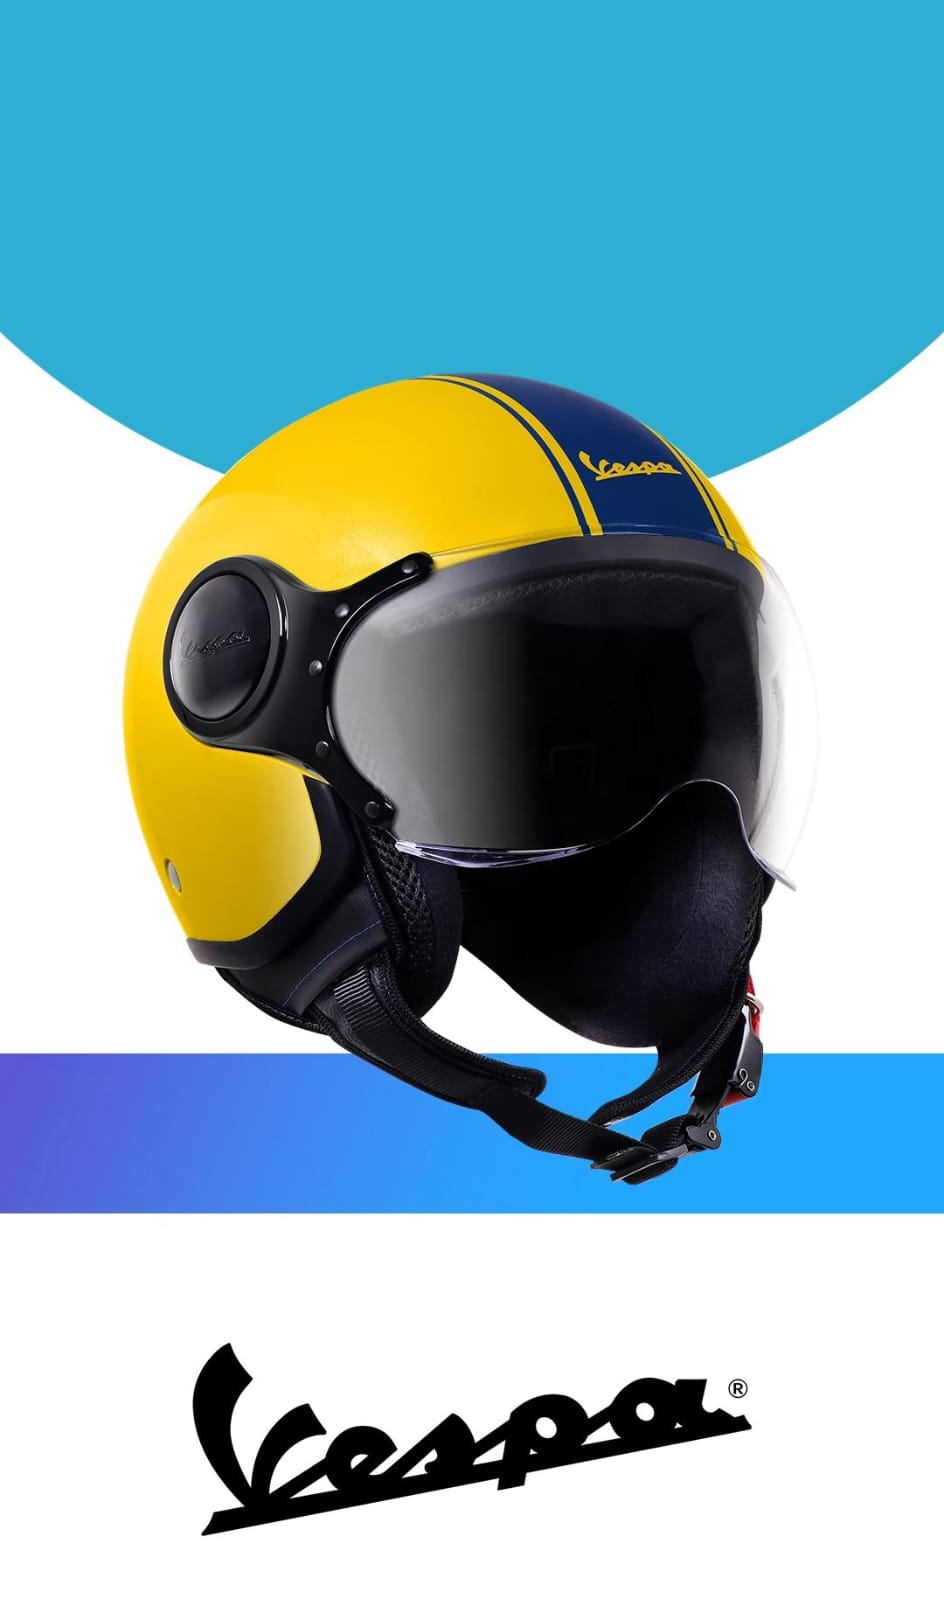 Helm Premium Vespa Terbaru, Harganya Berapa?